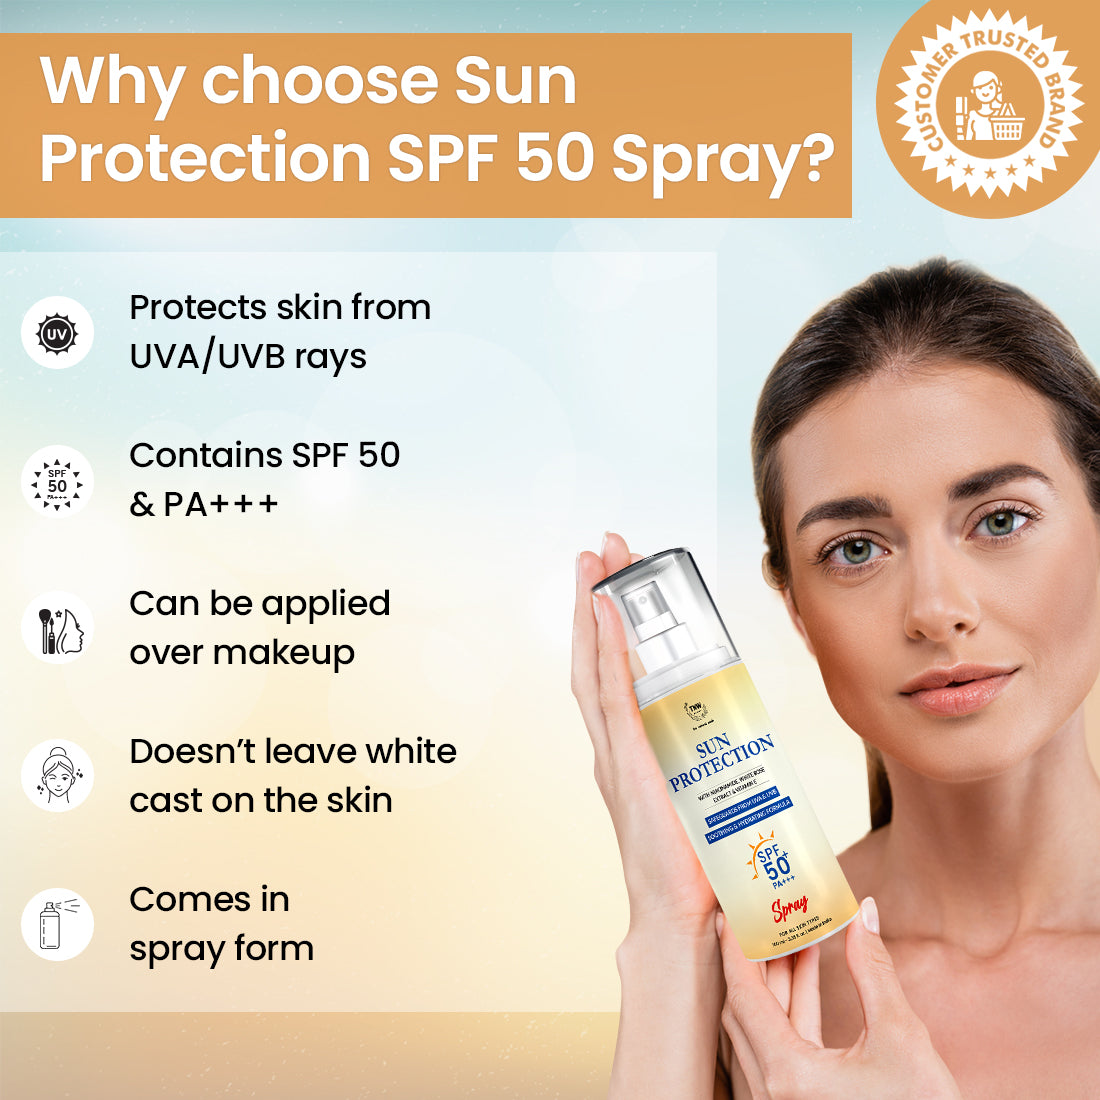 Sun Protection Spf 50 Spray.